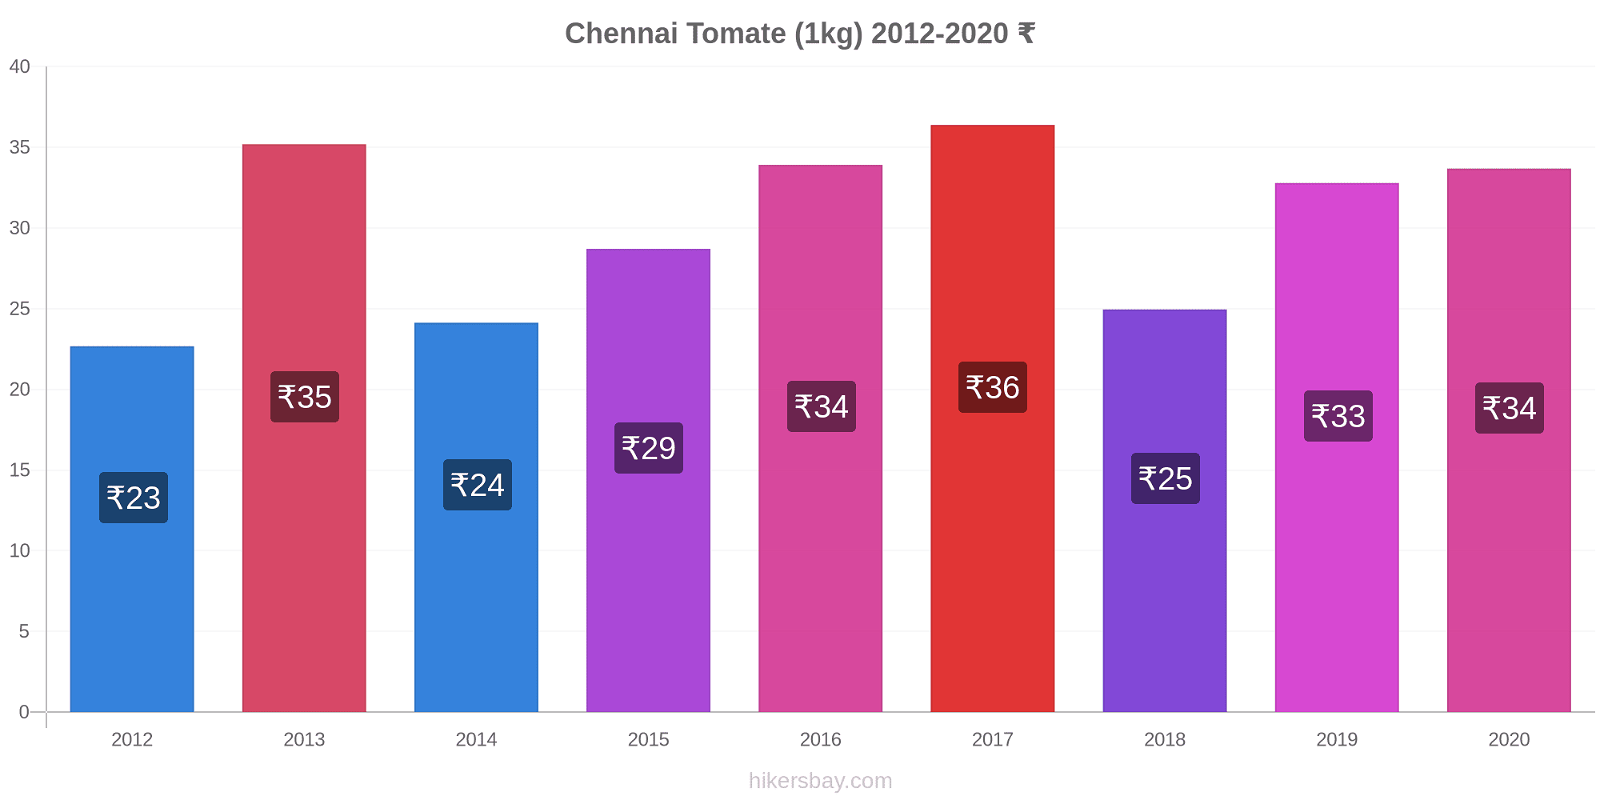 Chennai changements de prix Tomate (1kg) hikersbay.com